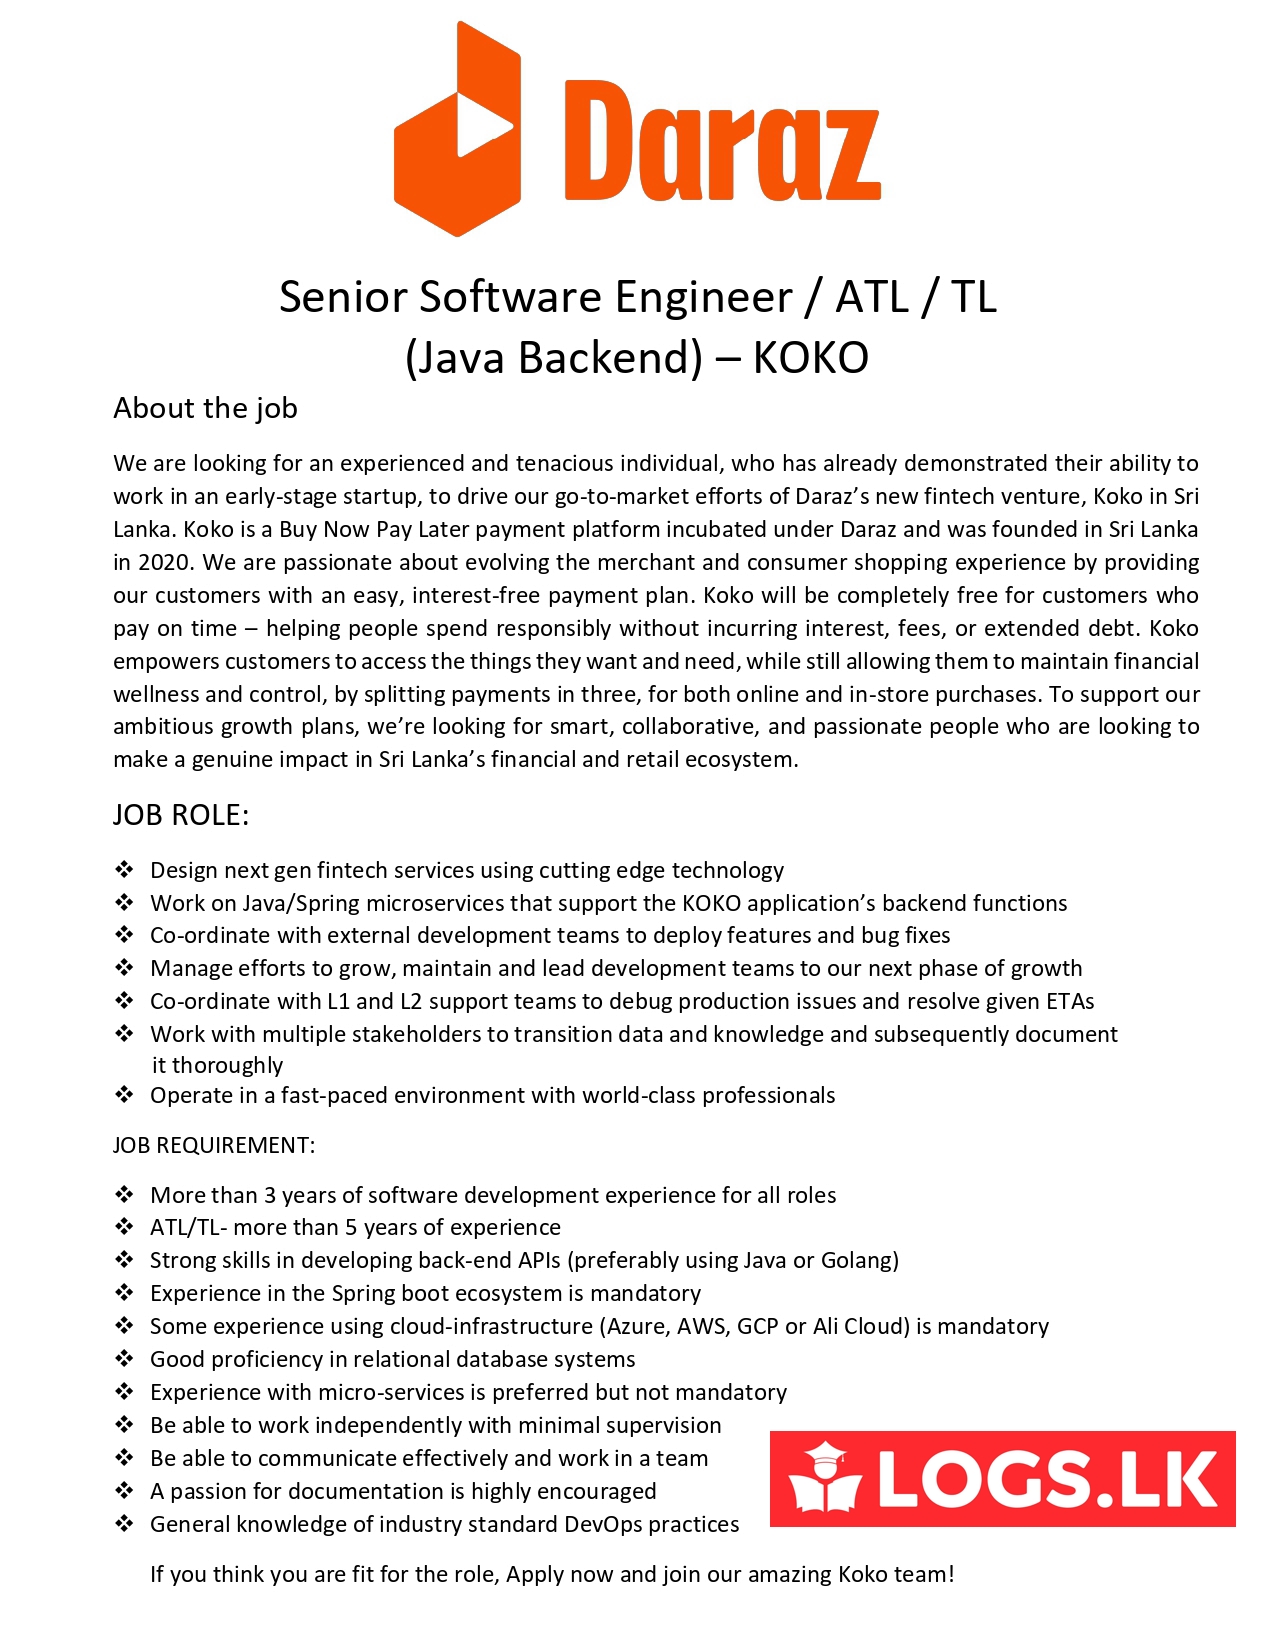 Senior Software Engineer / ATL / TL (Java Backend) KOKO - Daraz Jobs Vacancies